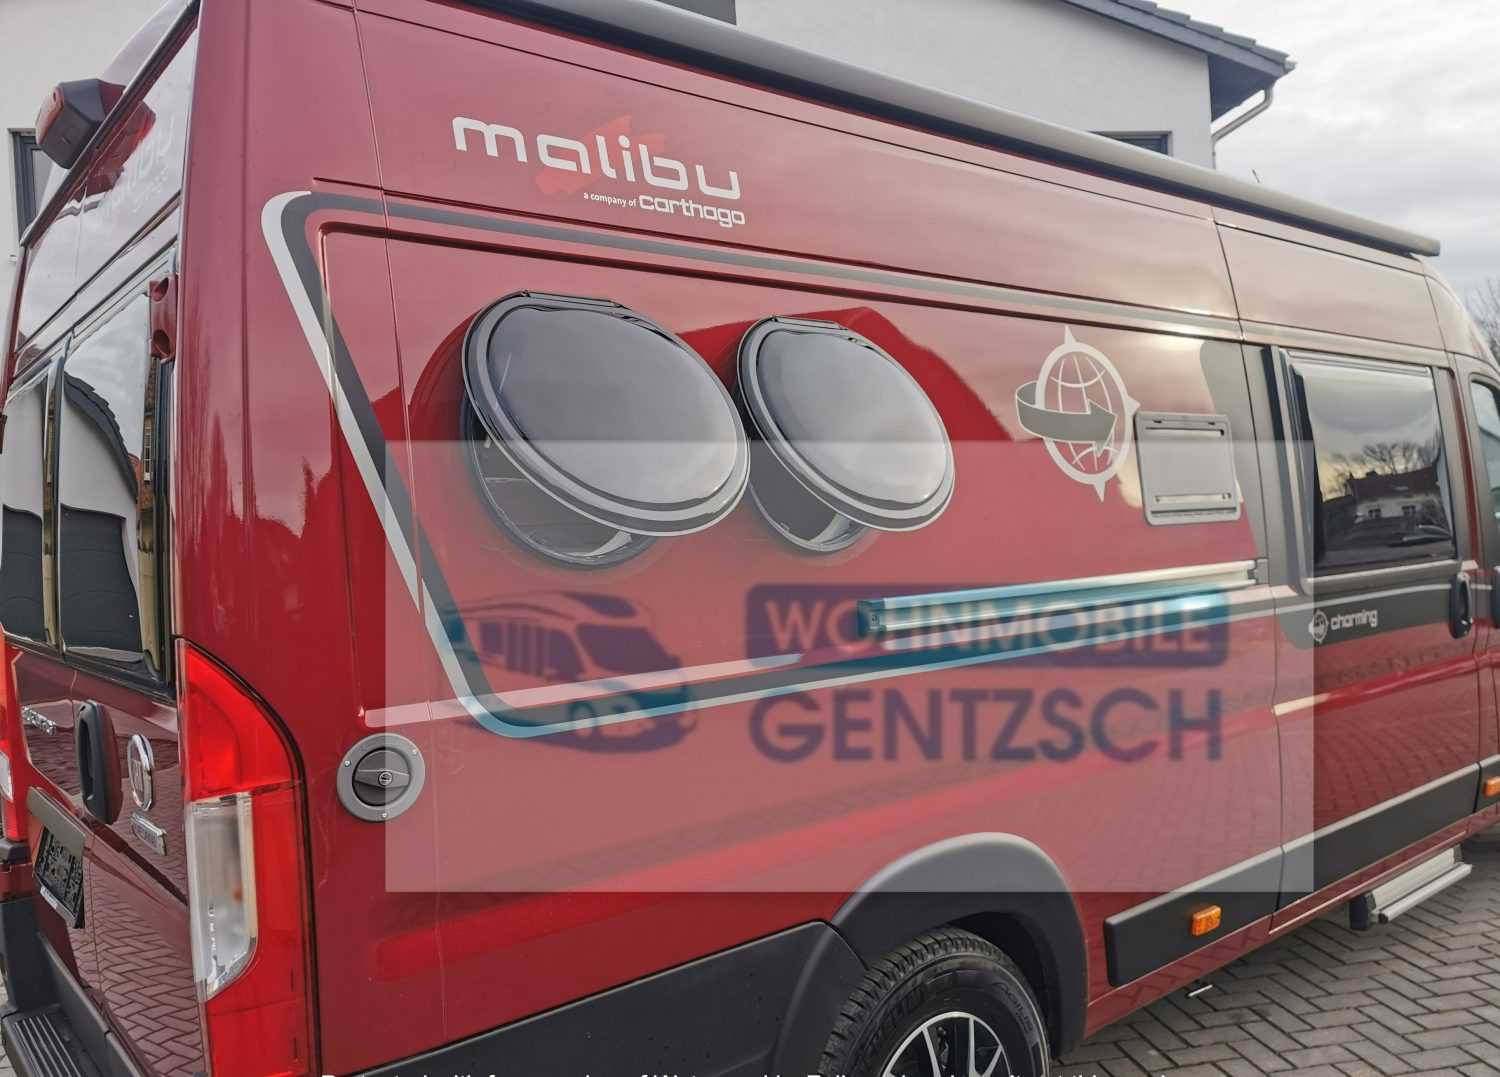 Ausklappbare Fenster, Malibu Wohnmobil rot, Wohnmobile Gentzsch, Wohnmobil Magdeburg